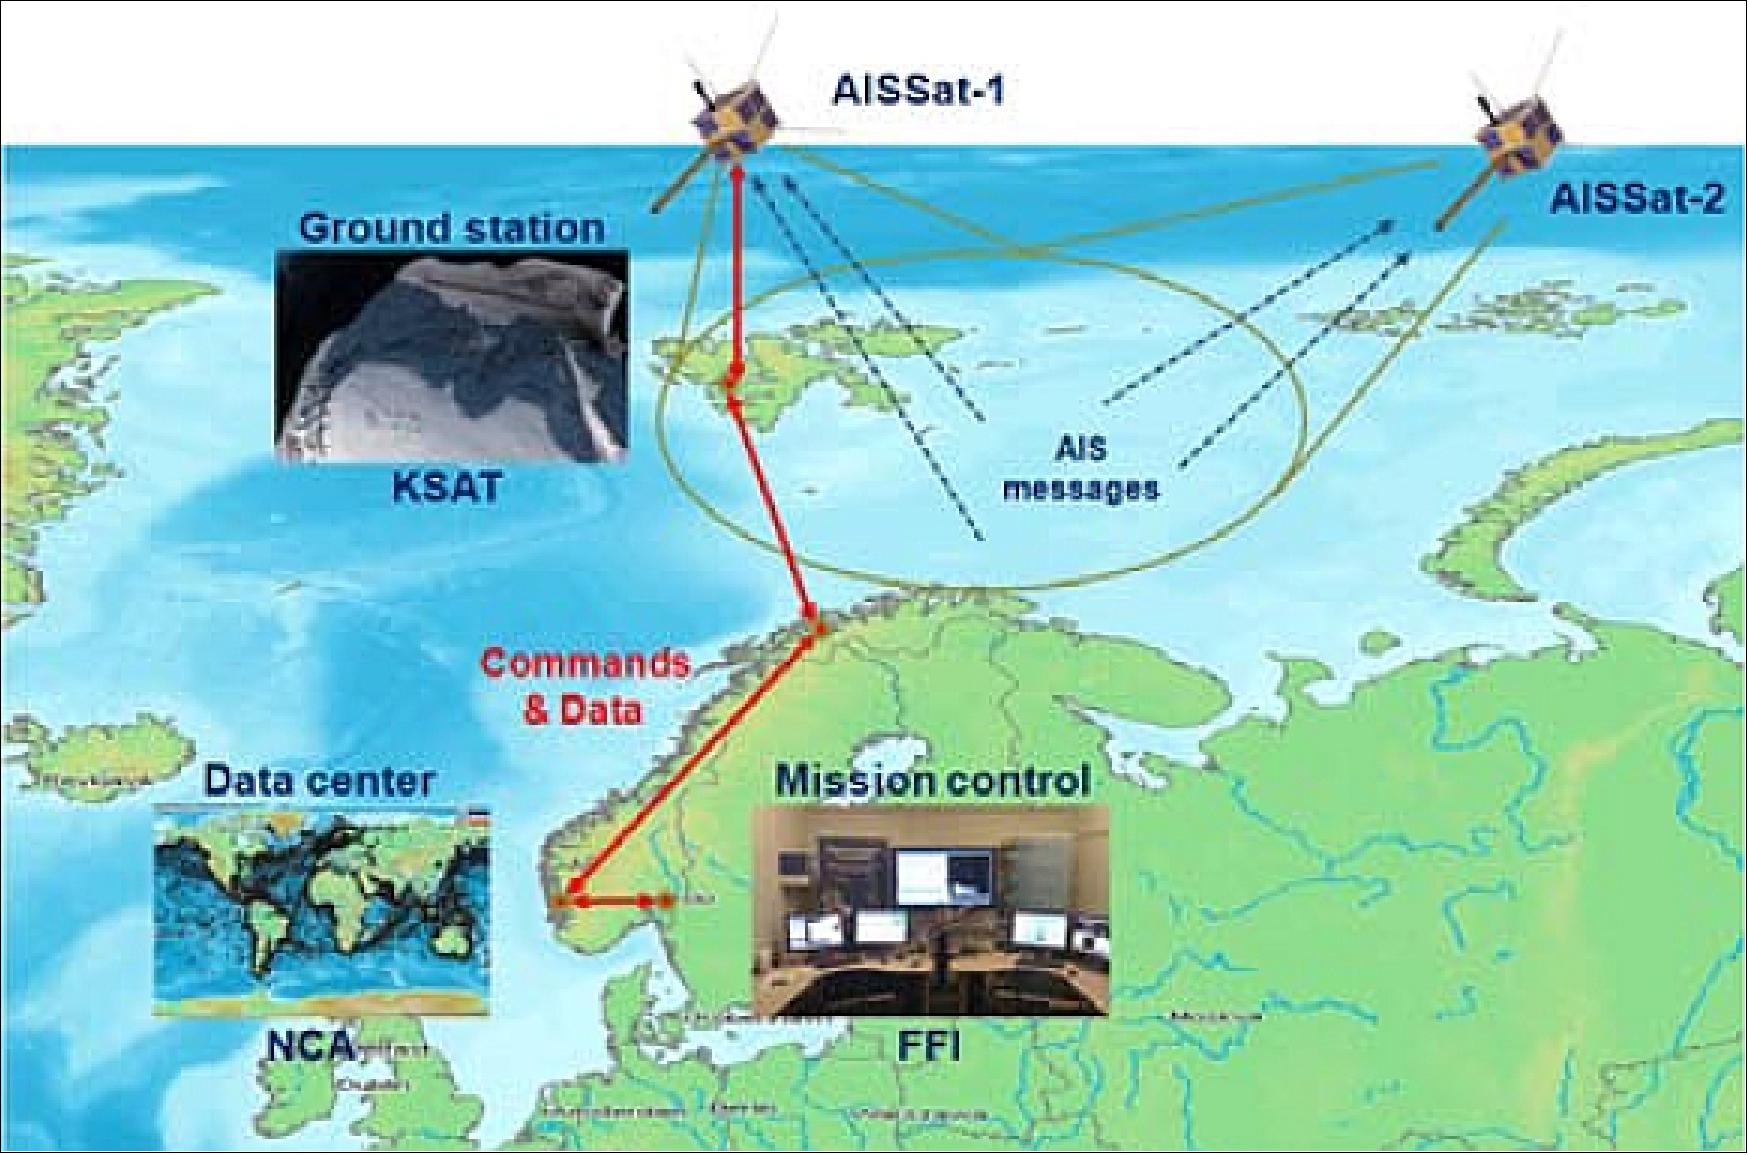 Figure 23: AISSat-1 mission architecture (image credit: FFI, Ref. 34)